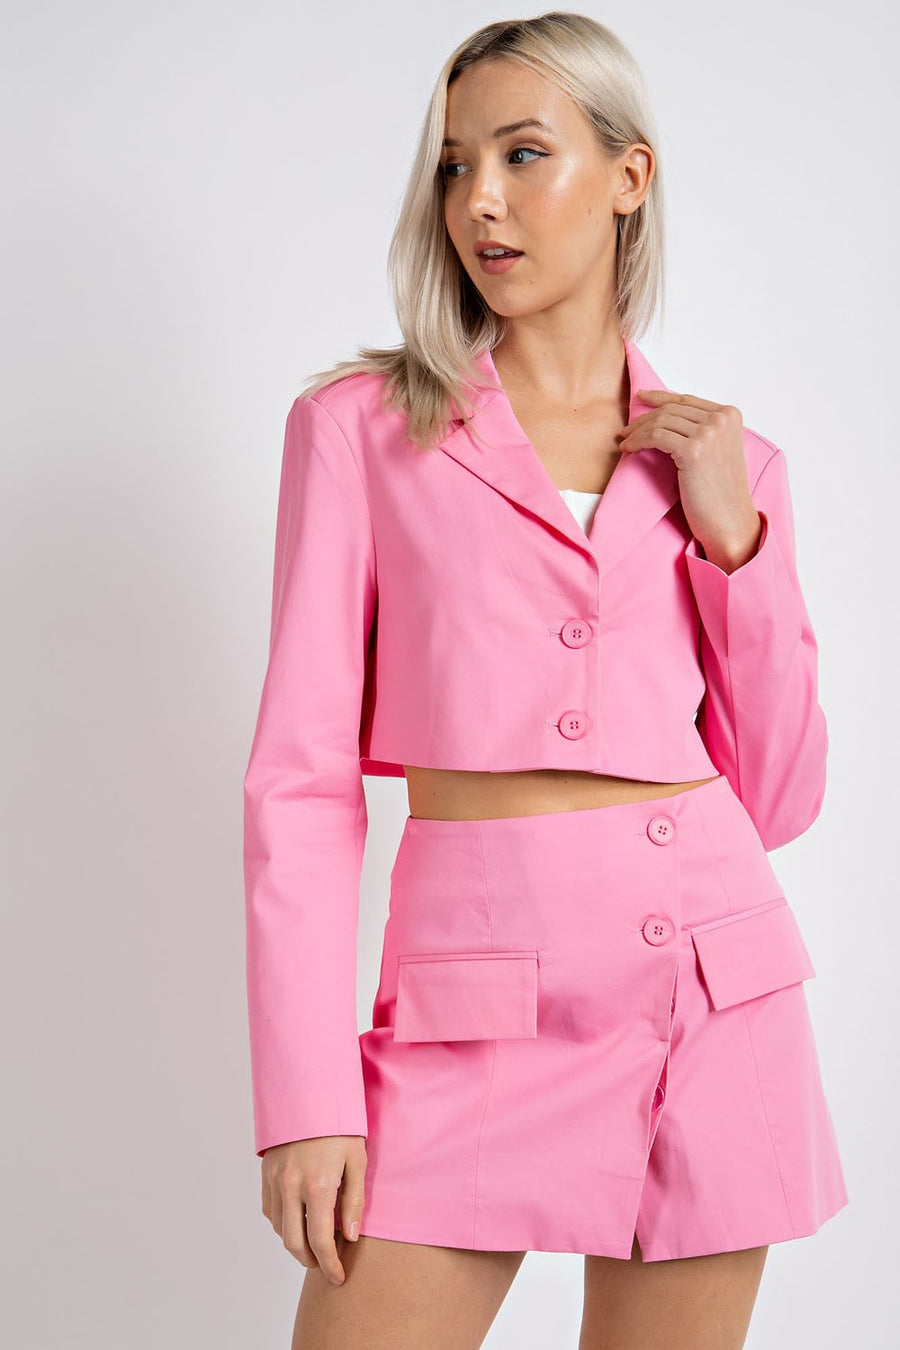 Model is wearing a cropped pink blazer.